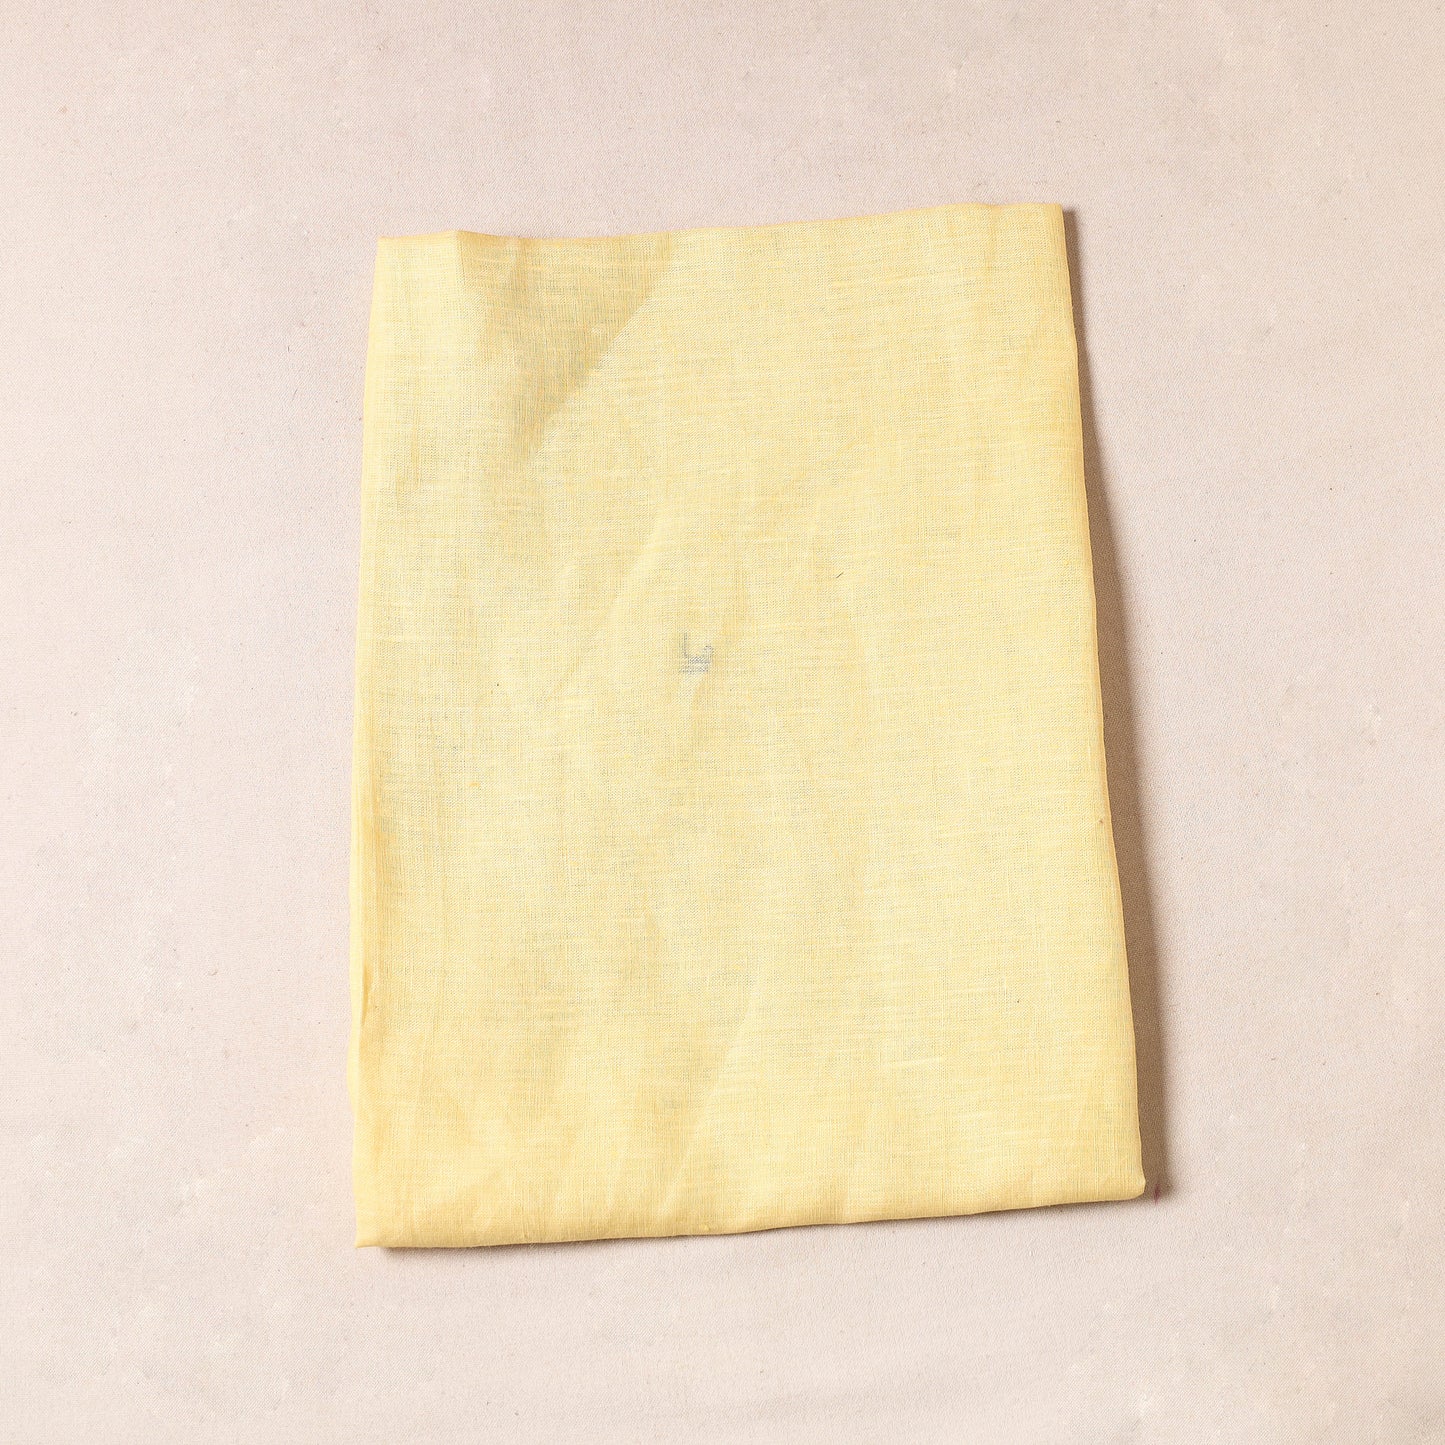 Yellow - Bhagalpuri Handloom Pure Linen Precut Fabric (1 Meter)